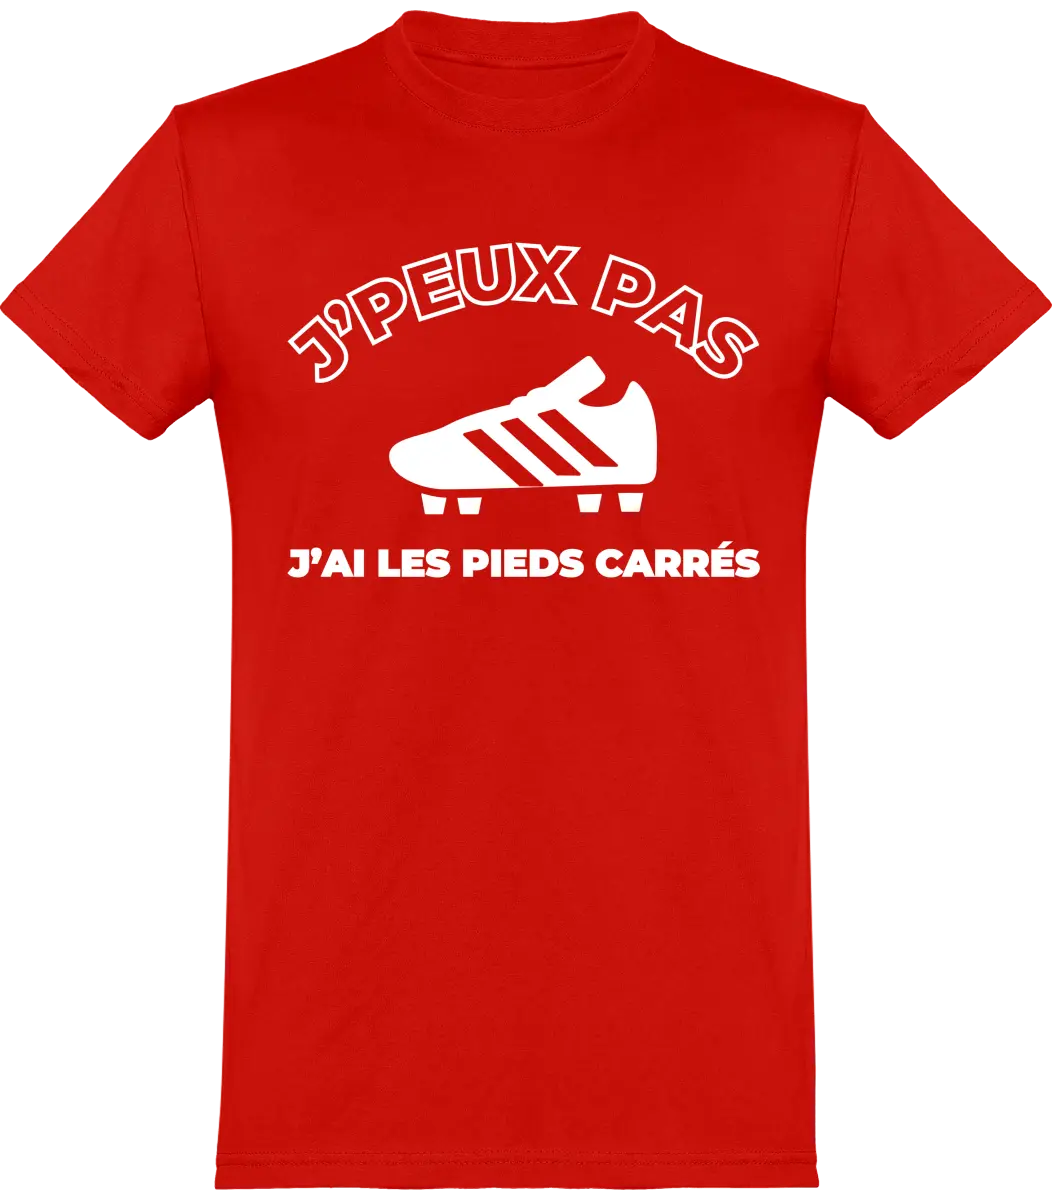 T-shirt Foot "J'peux pas j'ai les pieds carrés" | Mixte - French Humour